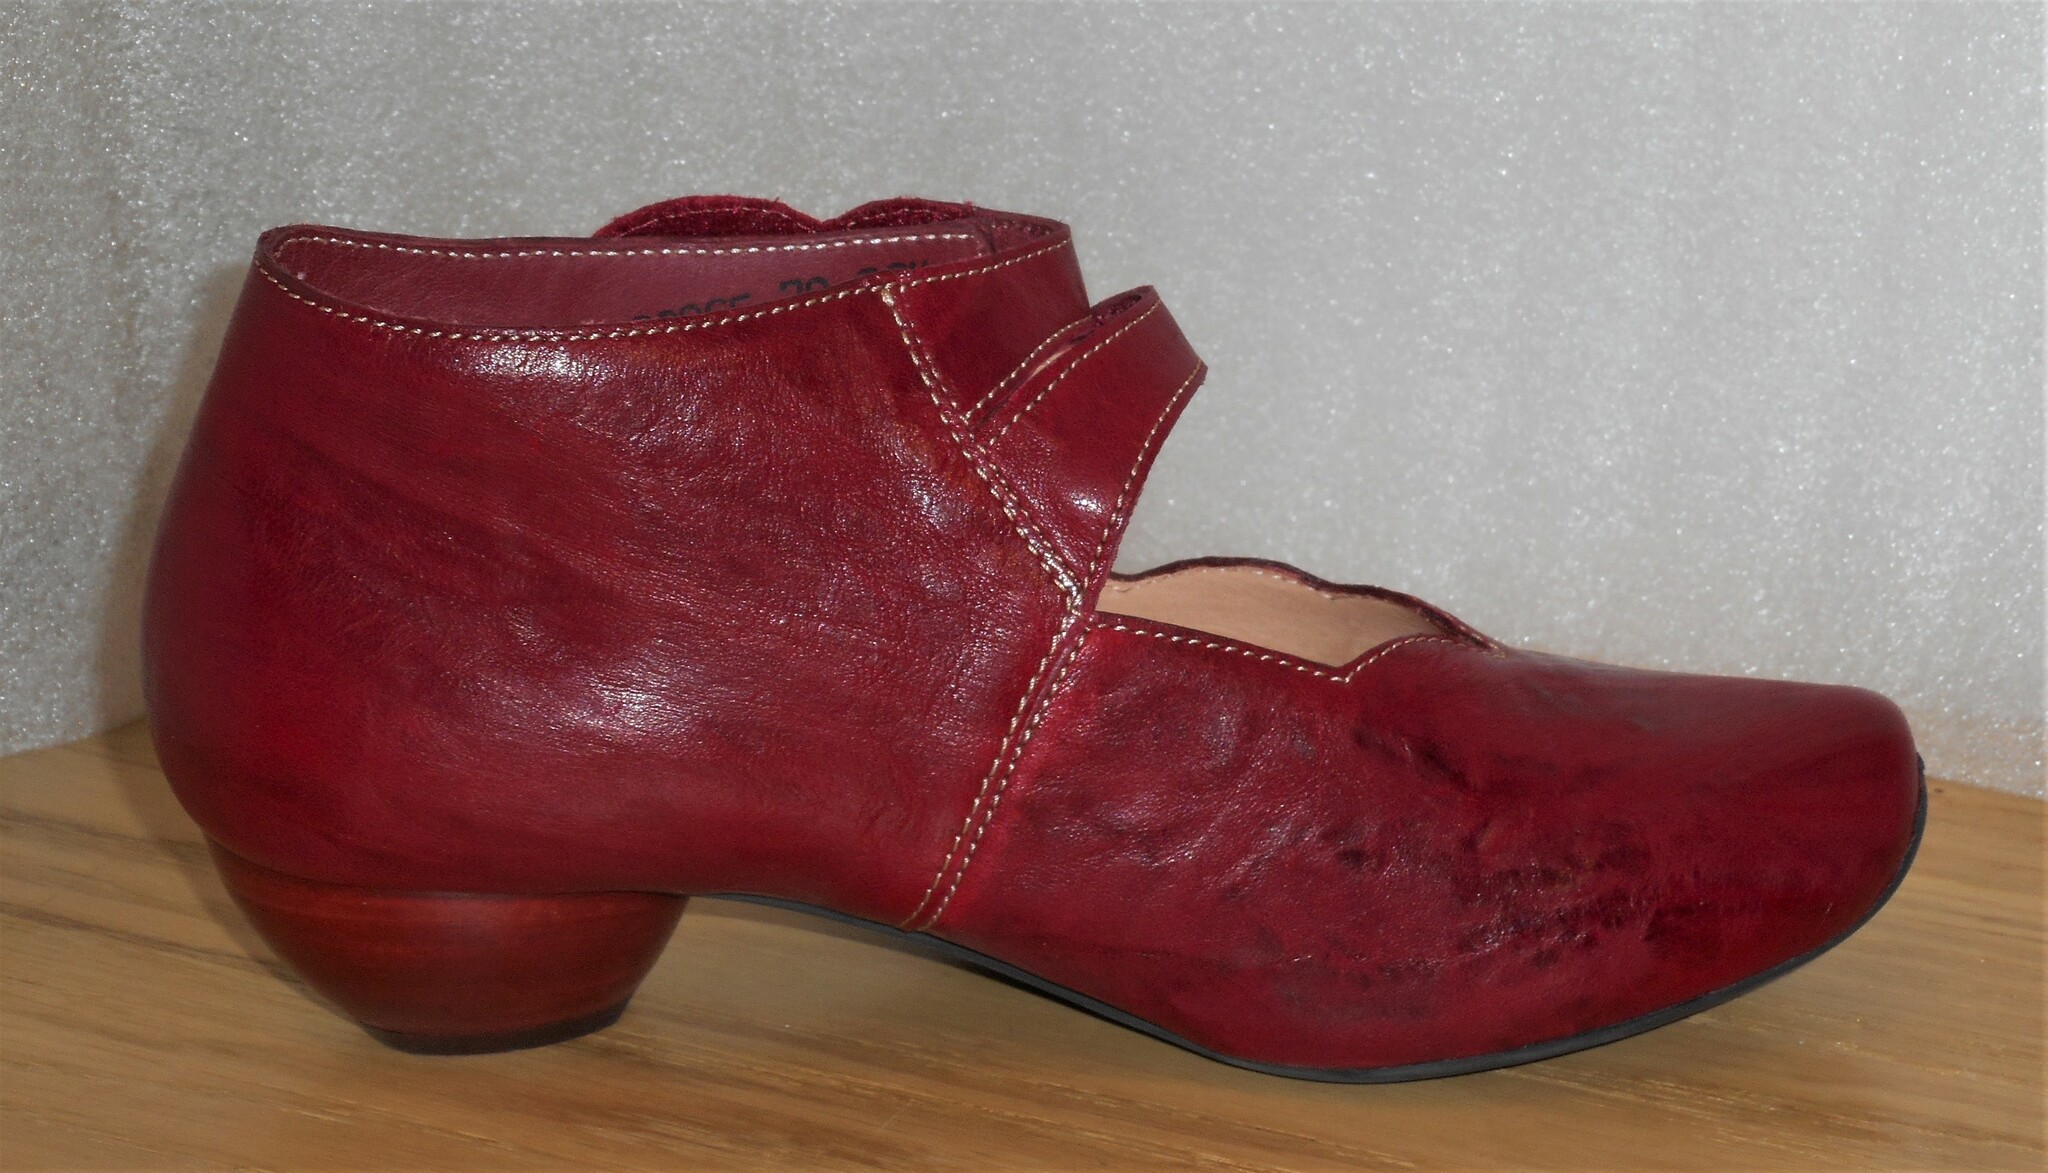 Röd sko med silverfärgade blommor - fabrikat Think!